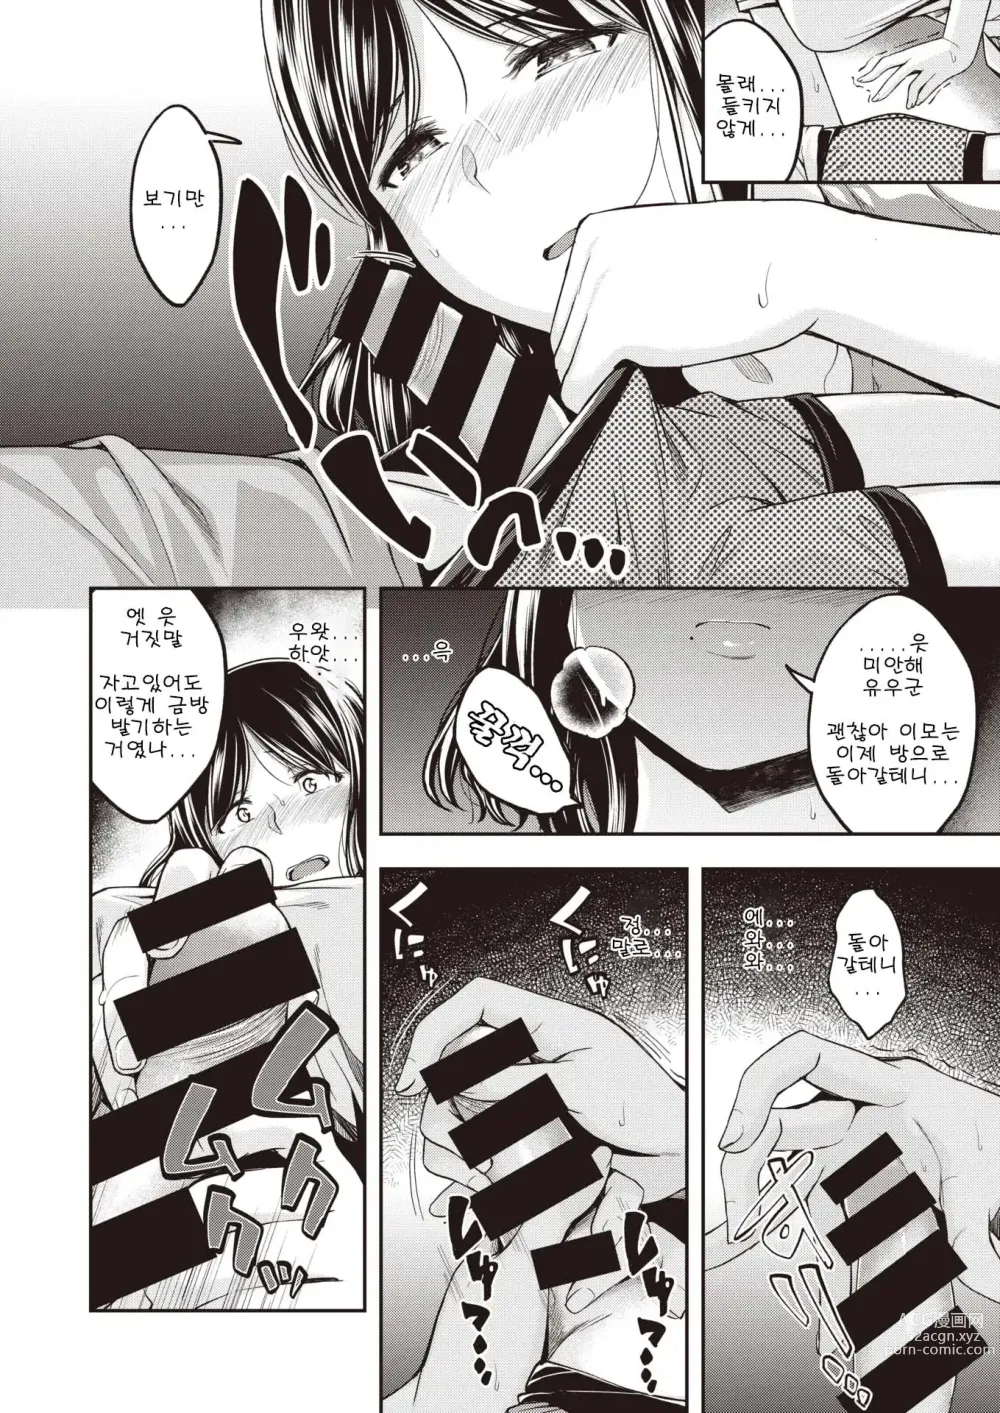 Page 6 of manga 모치즈키 가족은 좀 더 욕구불만